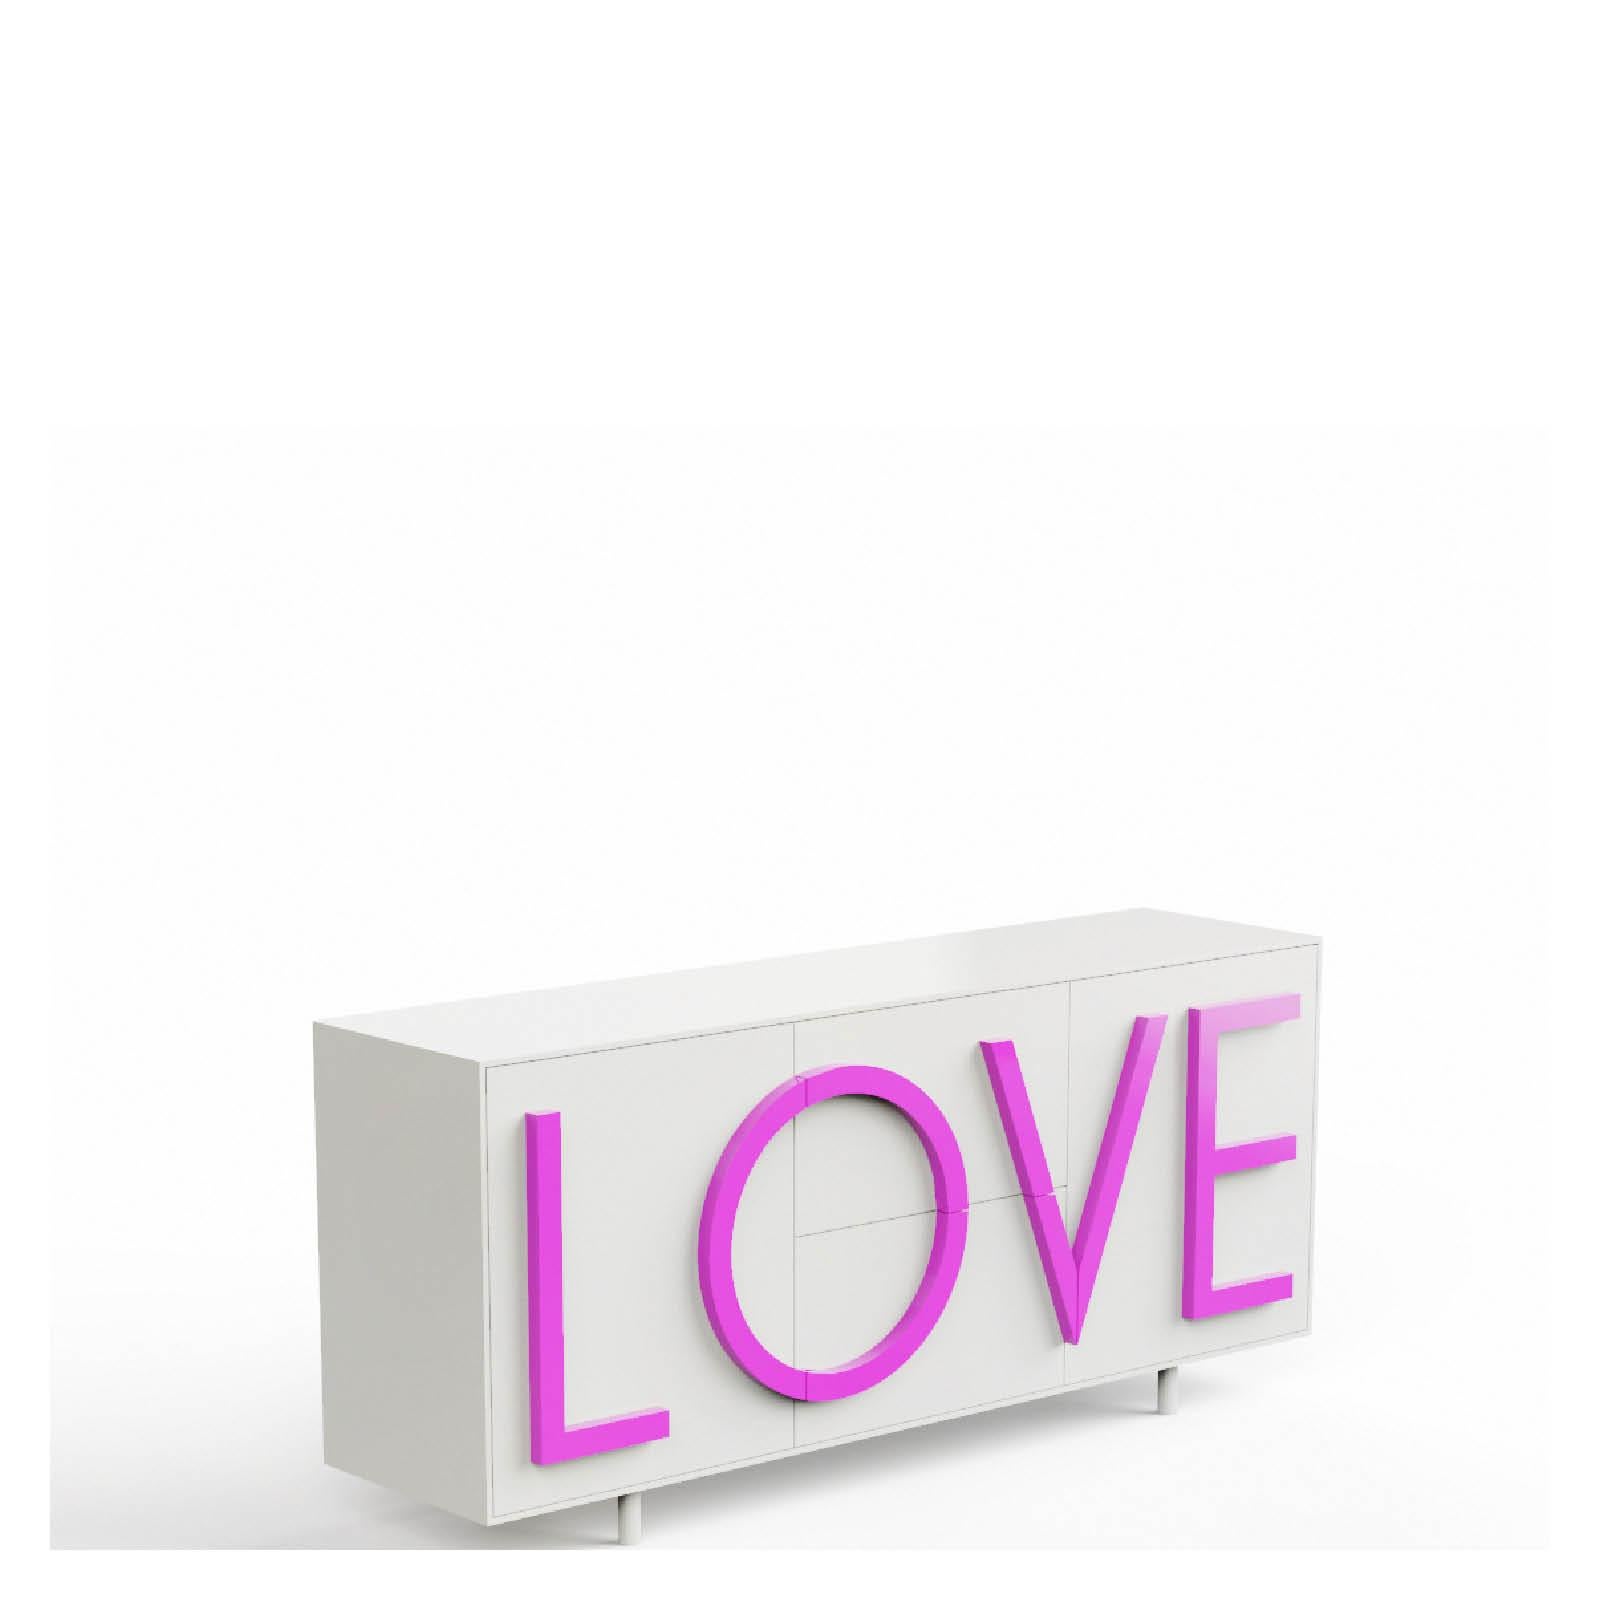 LOVE  cabinet  by Fabio Novembre for Driade For Sale 6